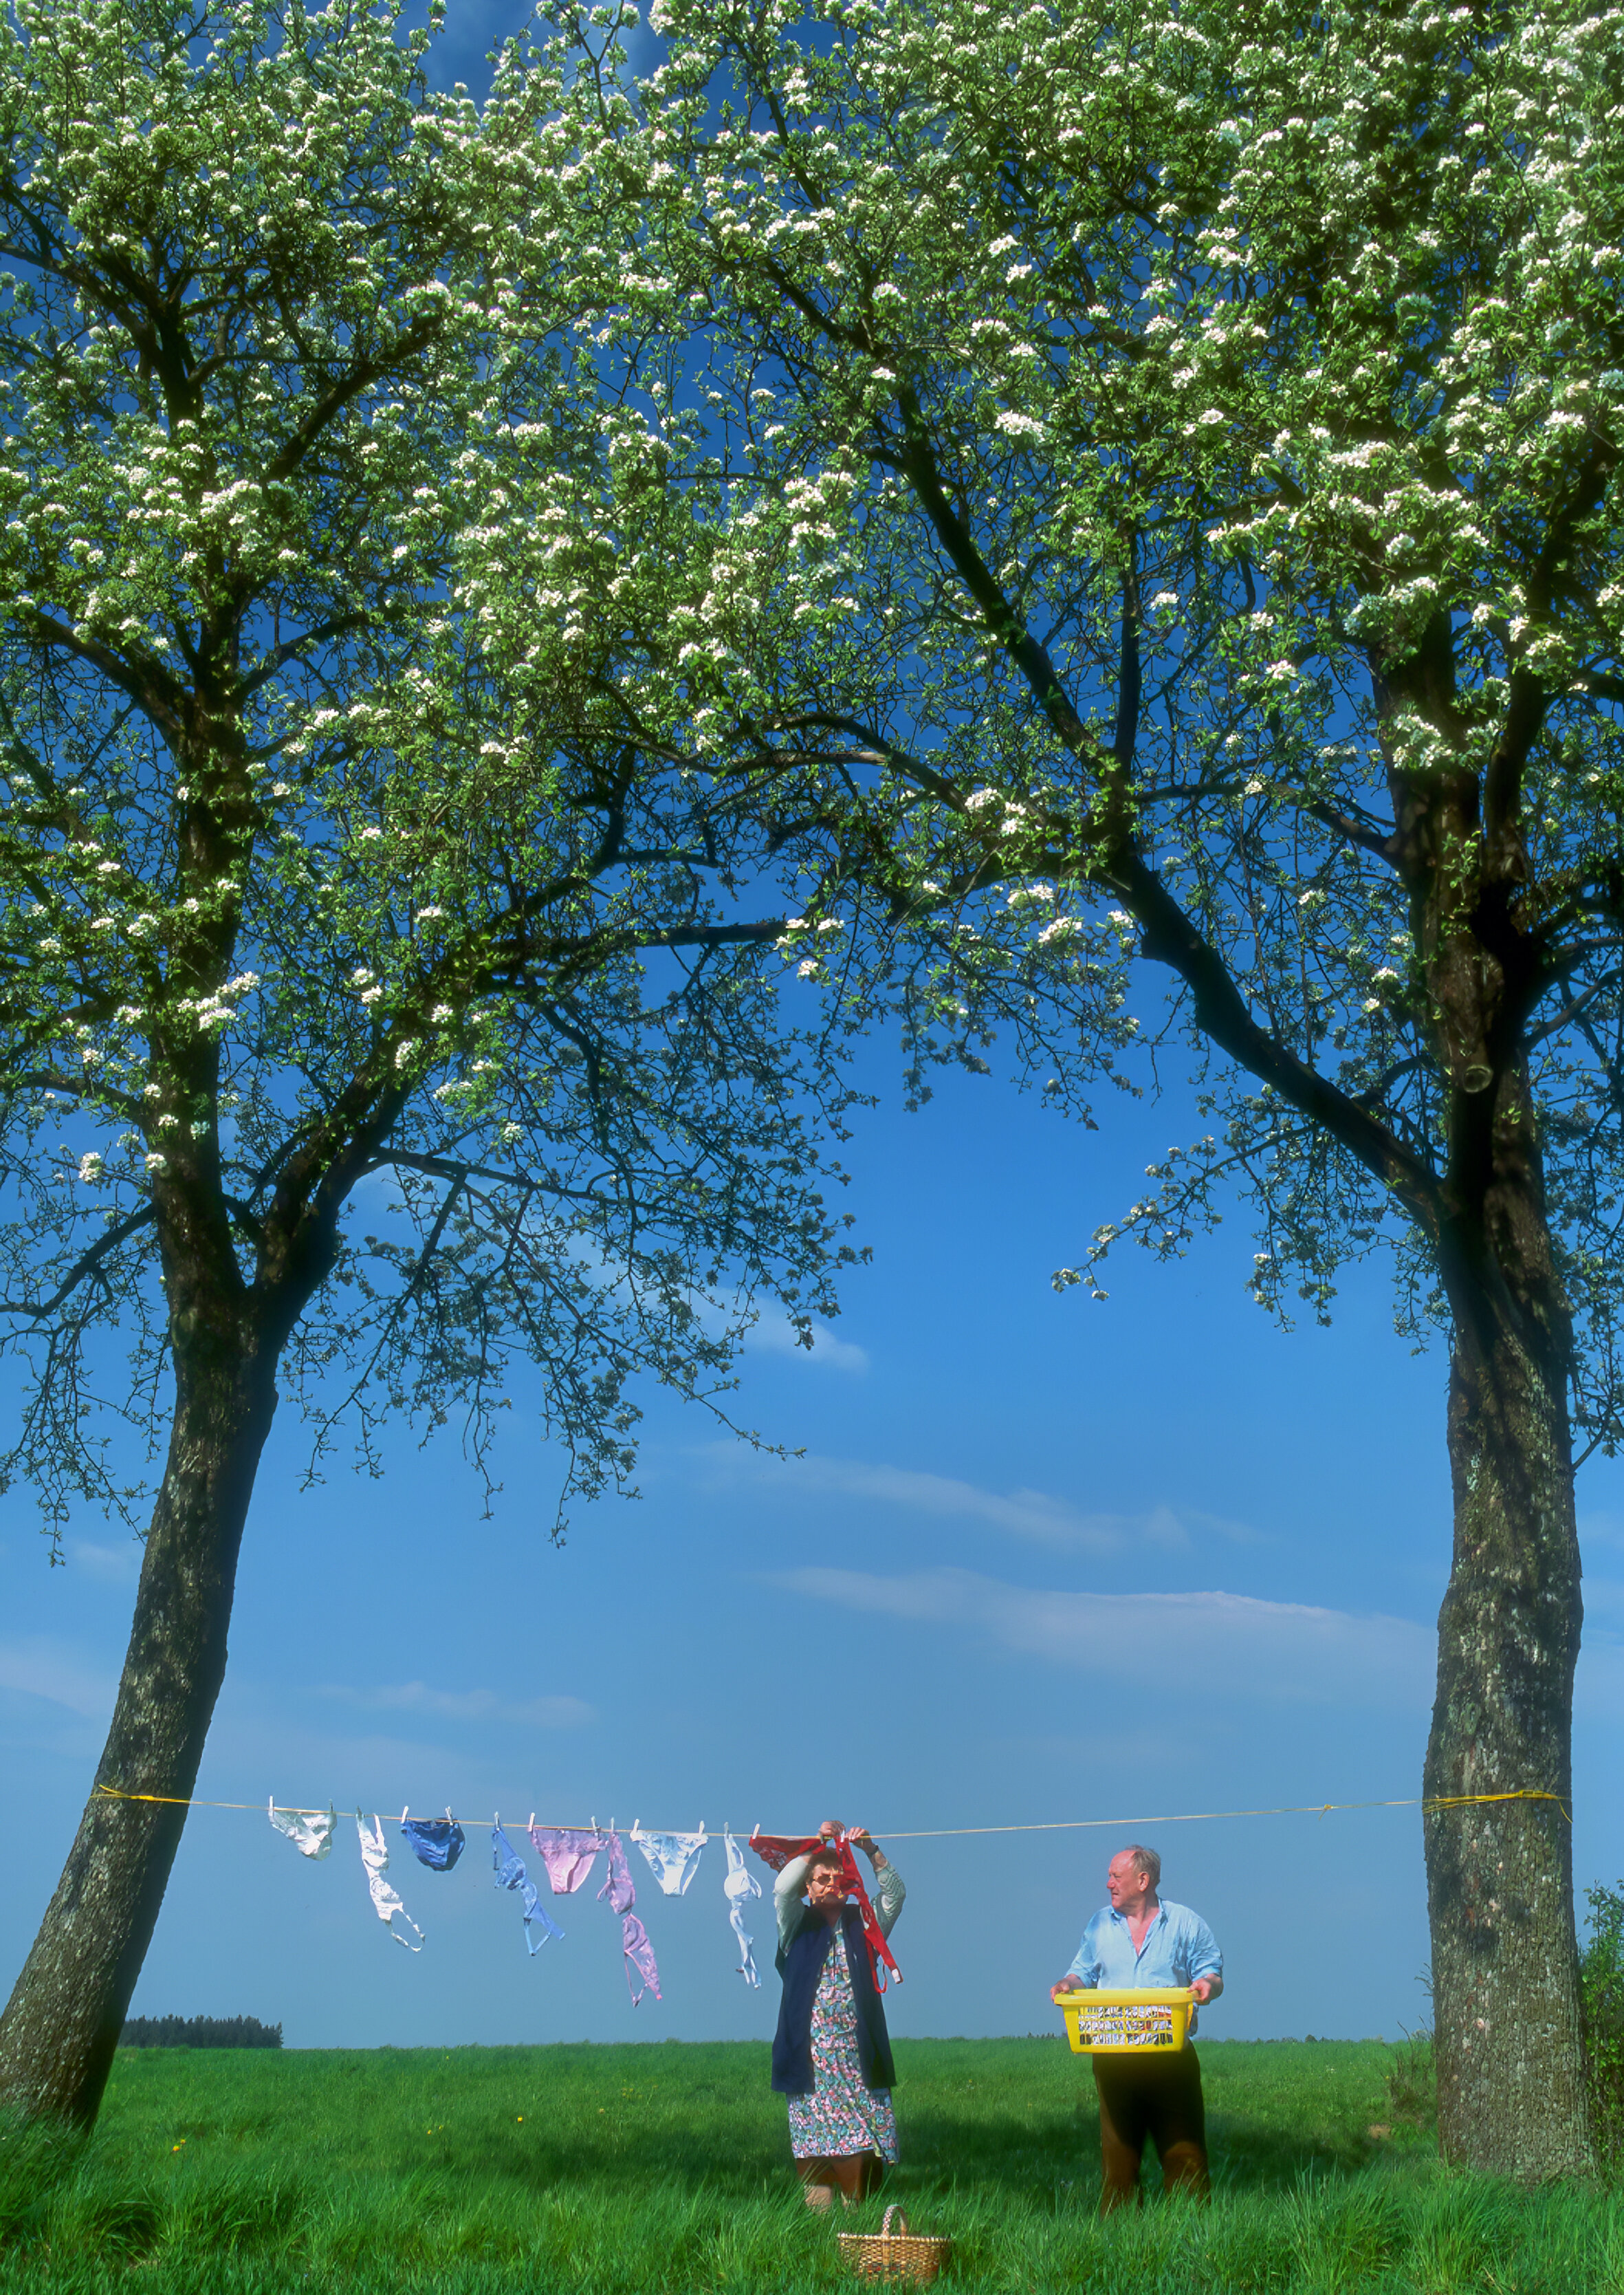 Wäscheleine zwischen zwei Bäumen vor blauem Himmel, zwei ältere Menschen hängen Wäsche an der frischne Luft auf 